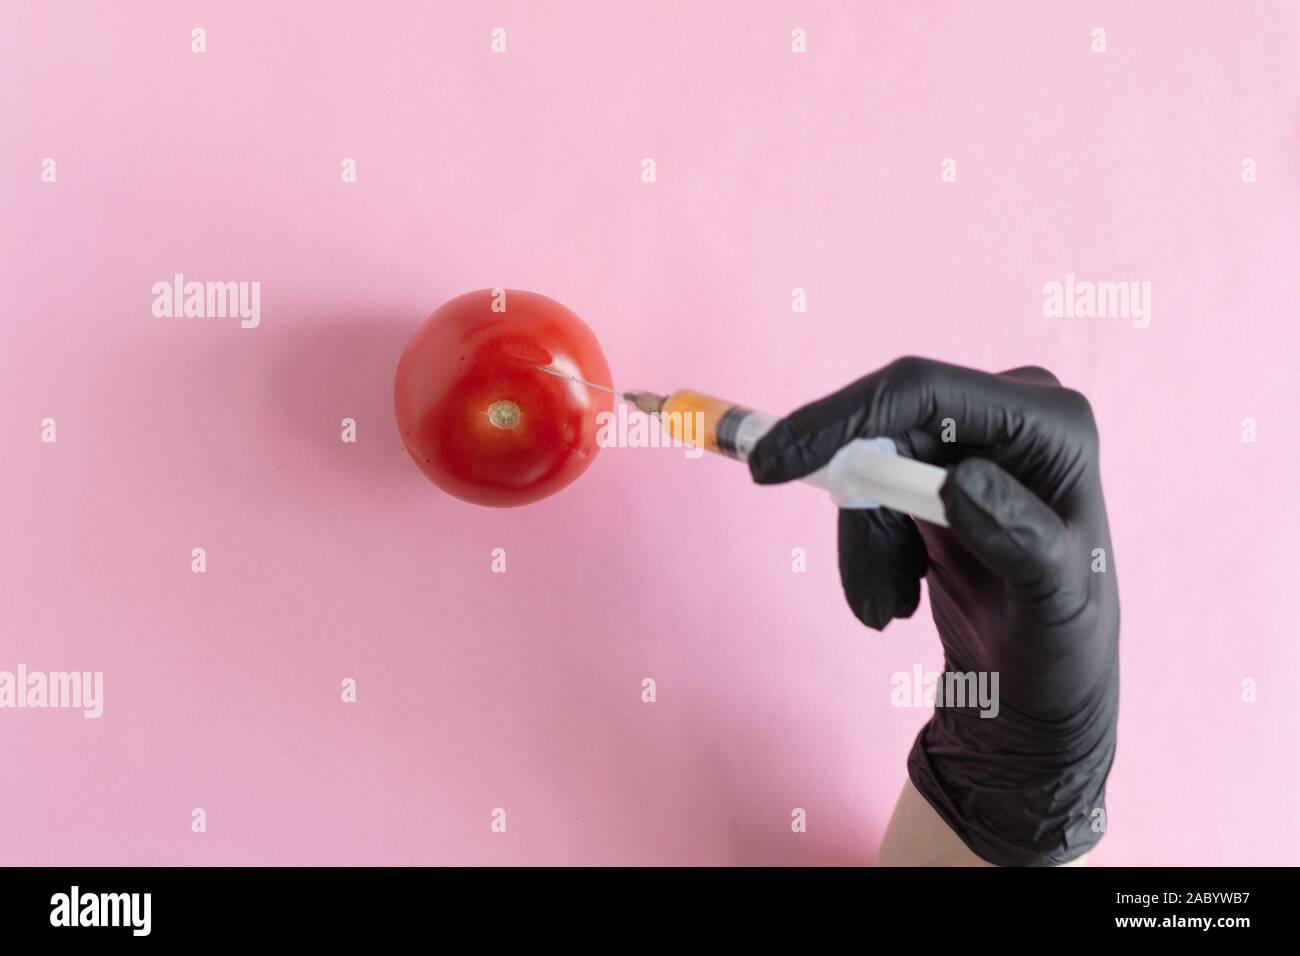 Chemische Verarbeitung von Gemüse, Düngemitteln und GVO. Hand der Person spritzt Chemikalien in Tomaten, GVO-Dünger und Chemikalien mit einer Spritze zu Stockfoto